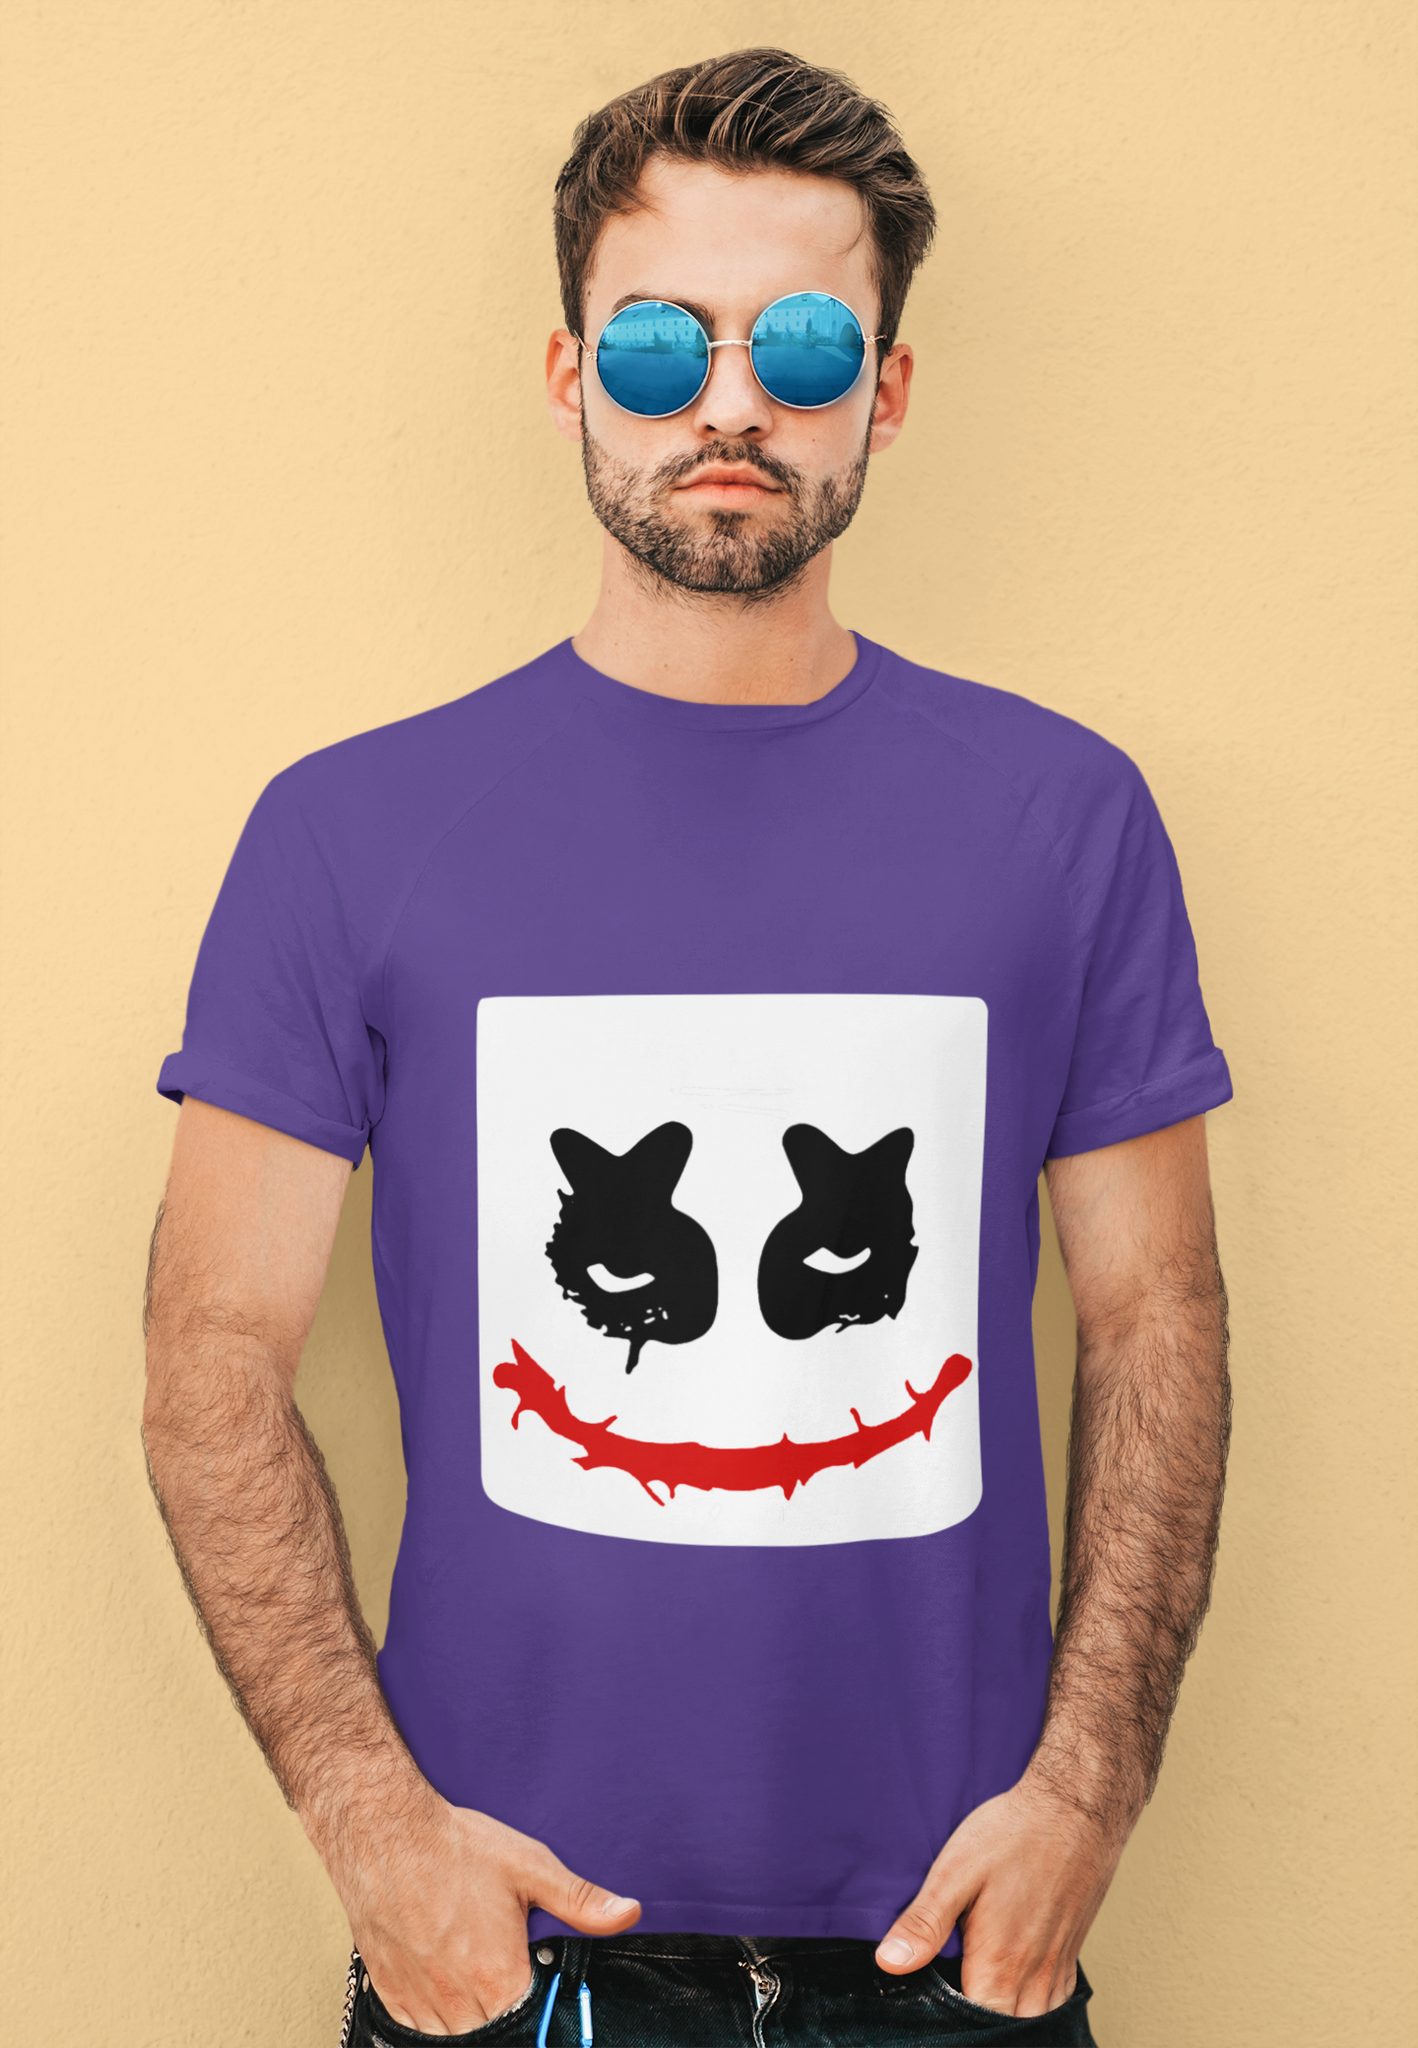 Joker T Shirt, Joker Face T Shirt, Villians Shirt, Halloween Gifts